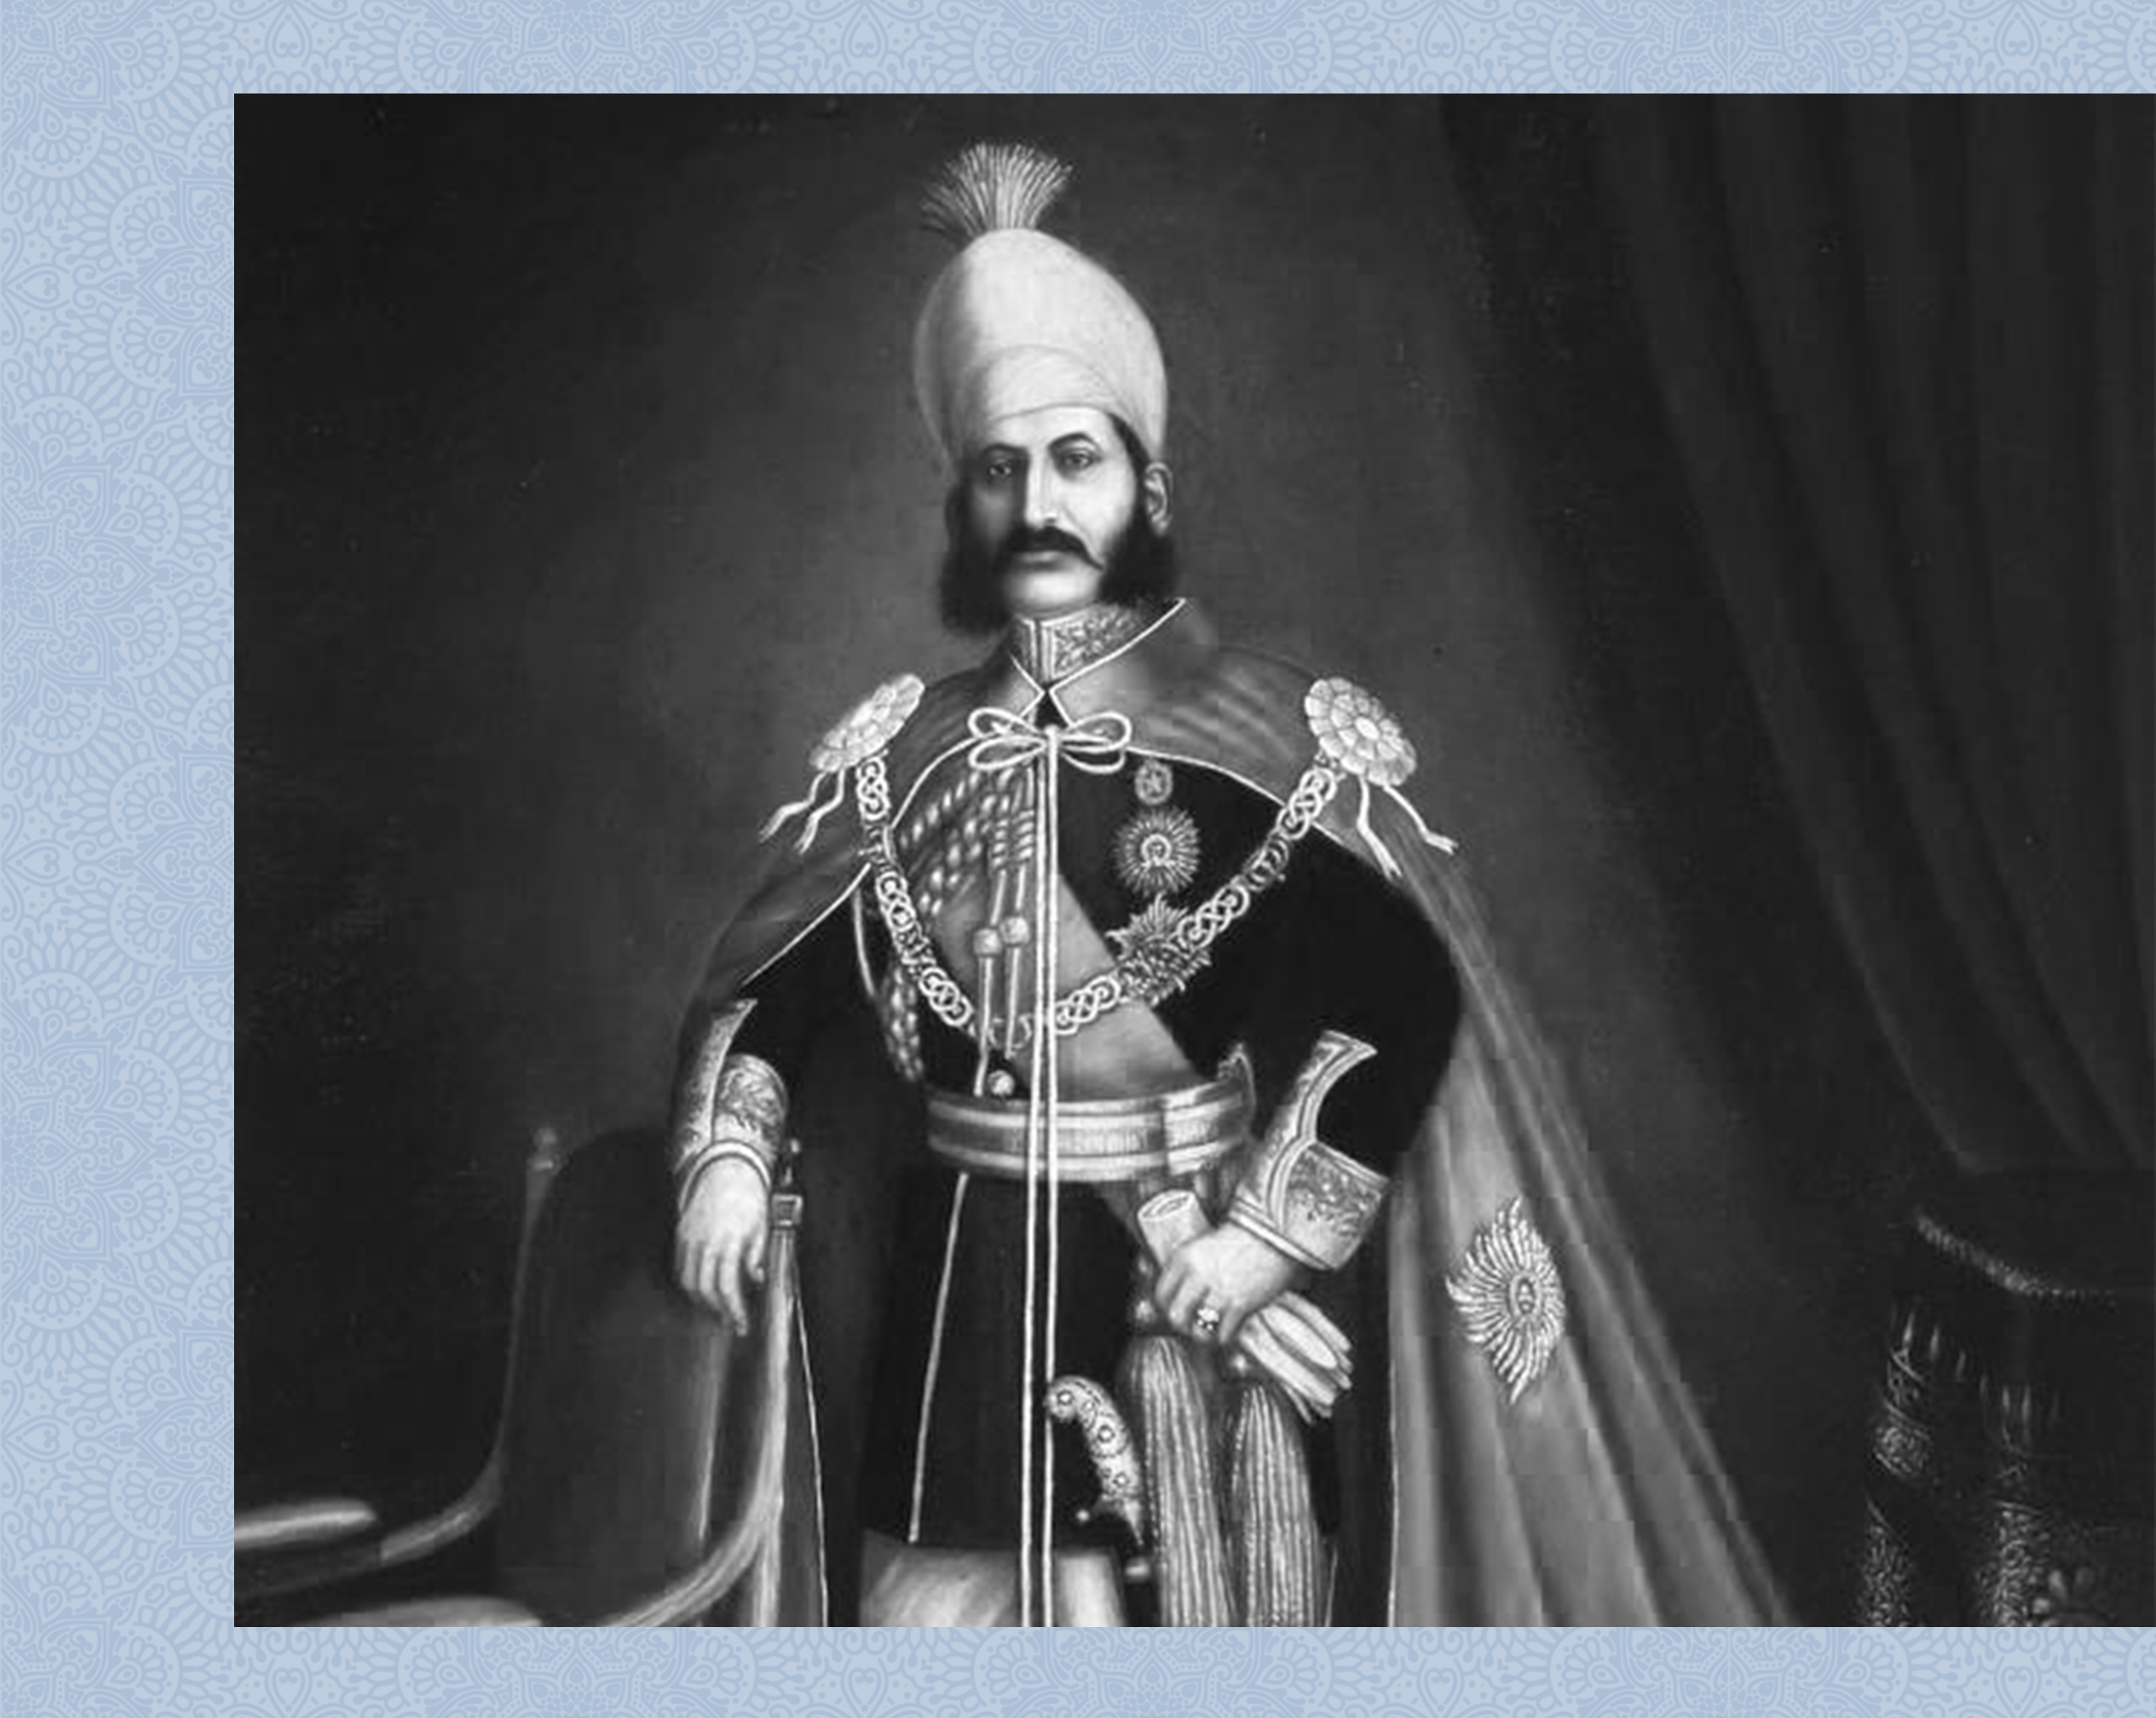 Nizam Mir Mahbub Ali Khan Asaf Jah V
